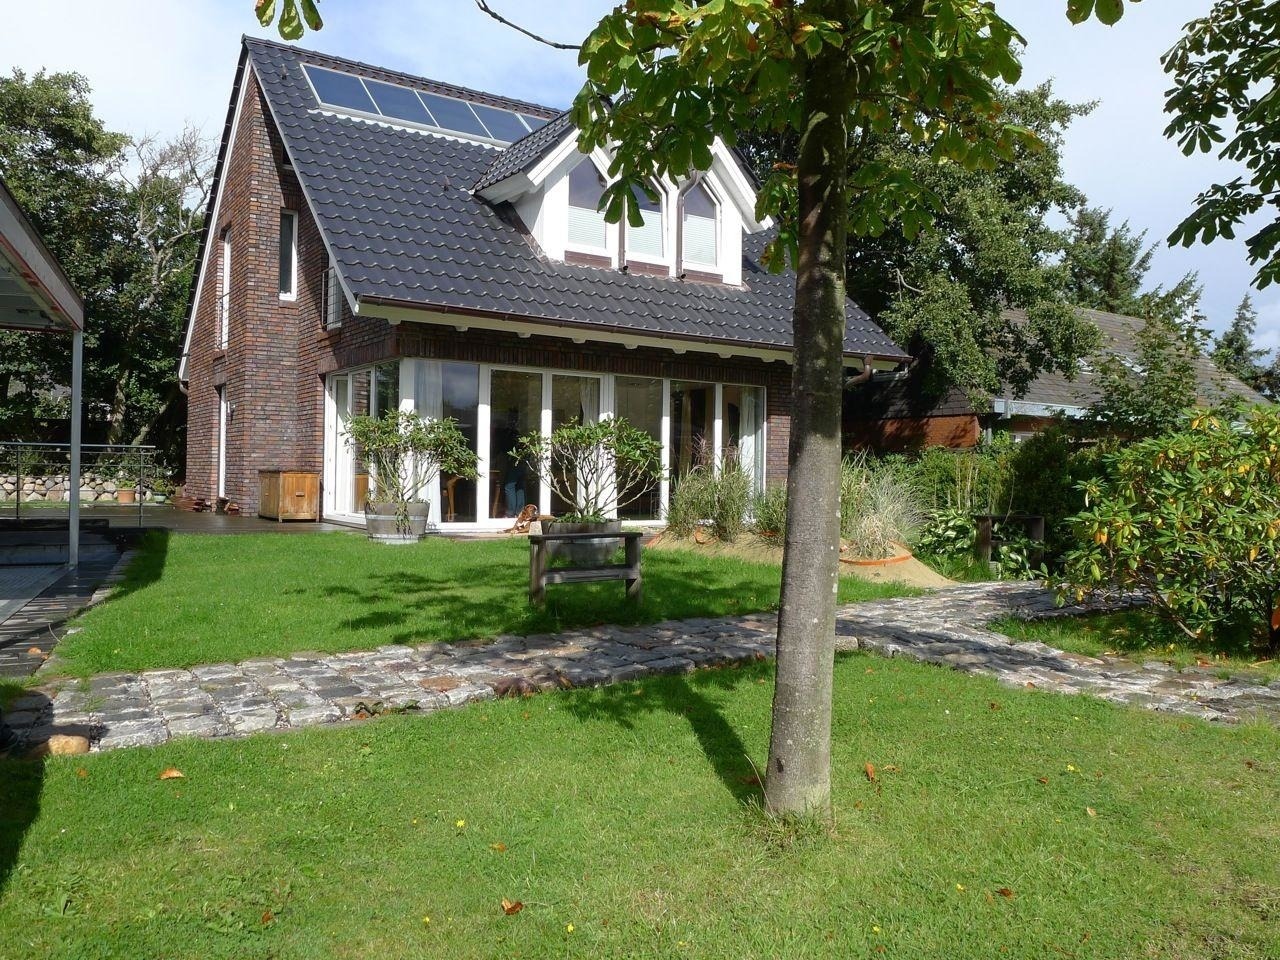 Haus Hookipa, App. 2 Ferienwohnung in Westerland